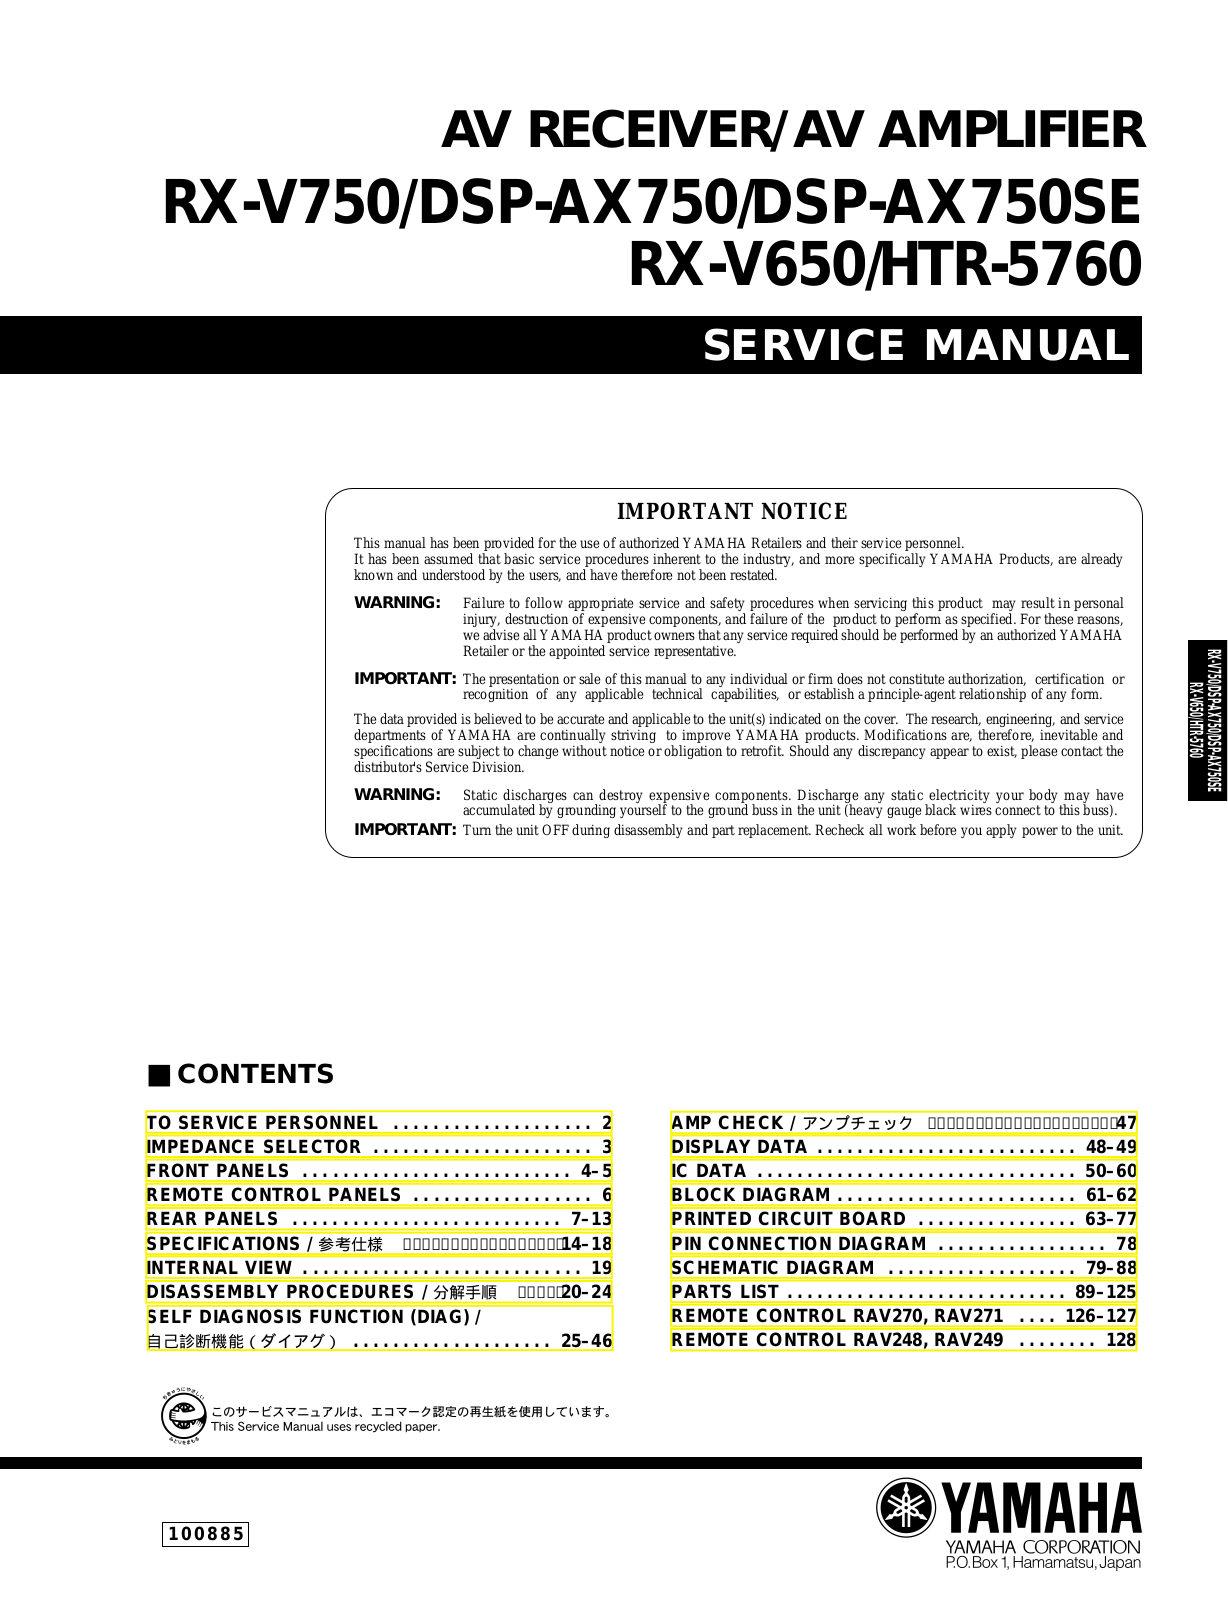 Sony RX-V750, DSP-AX750, DSP-AX750SE, RX-V650, HTR-5760 Service Manual